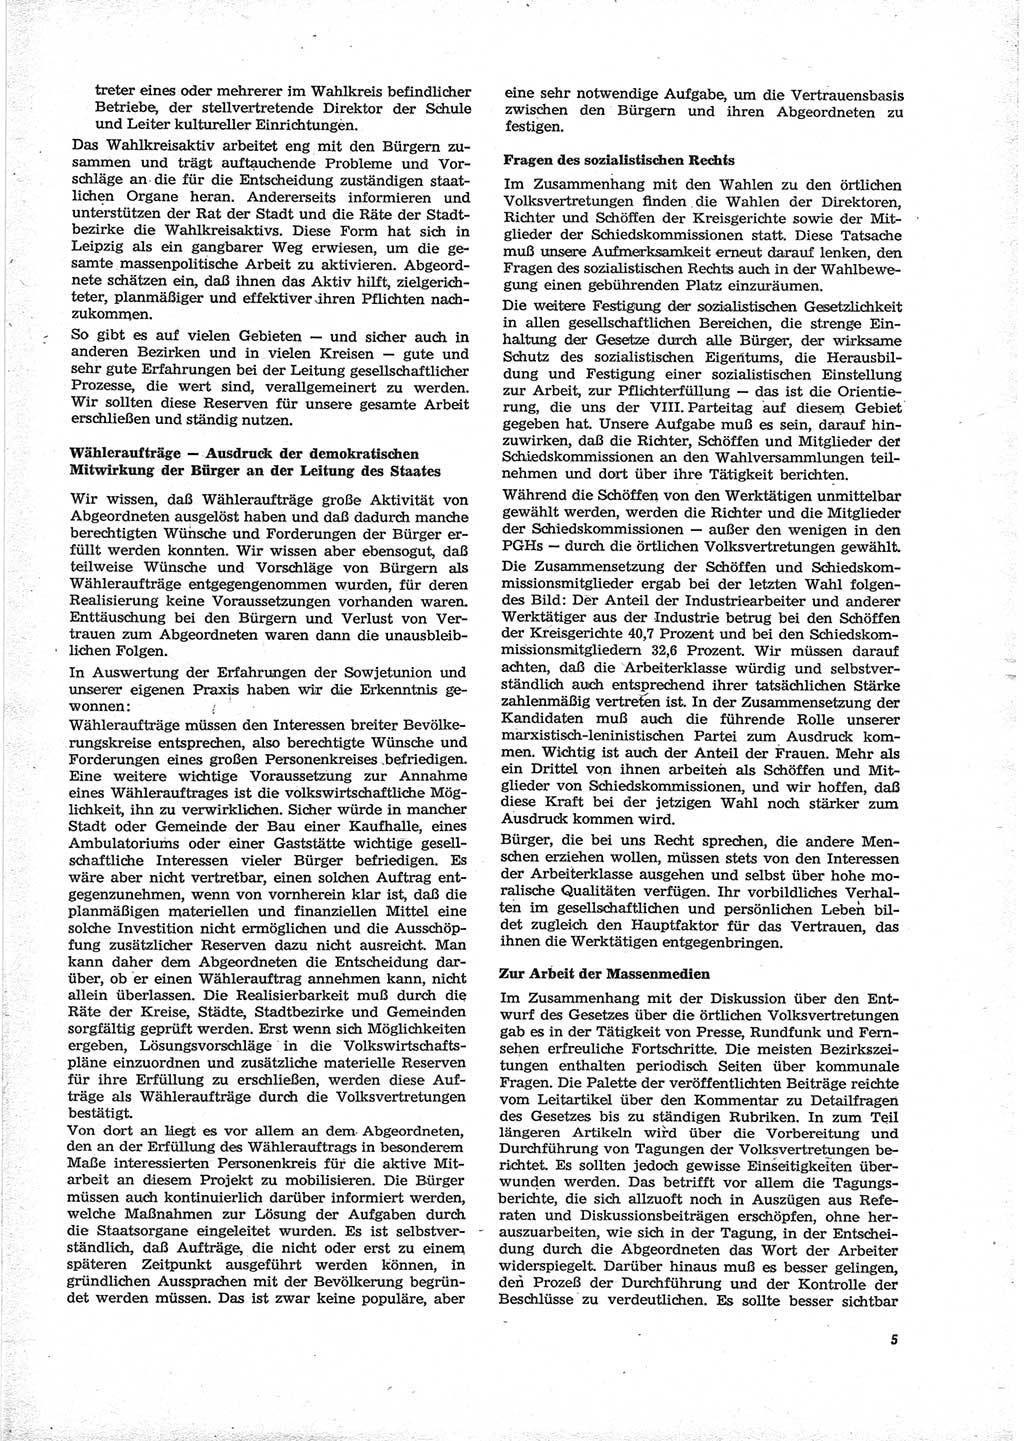 Neue Justiz (NJ), Zeitschrift für Recht und Rechtswissenschaft [Deutsche Demokratische Republik (DDR)], 28. Jahrgang 1974, Seite 5 (NJ DDR 1974, S. 5)